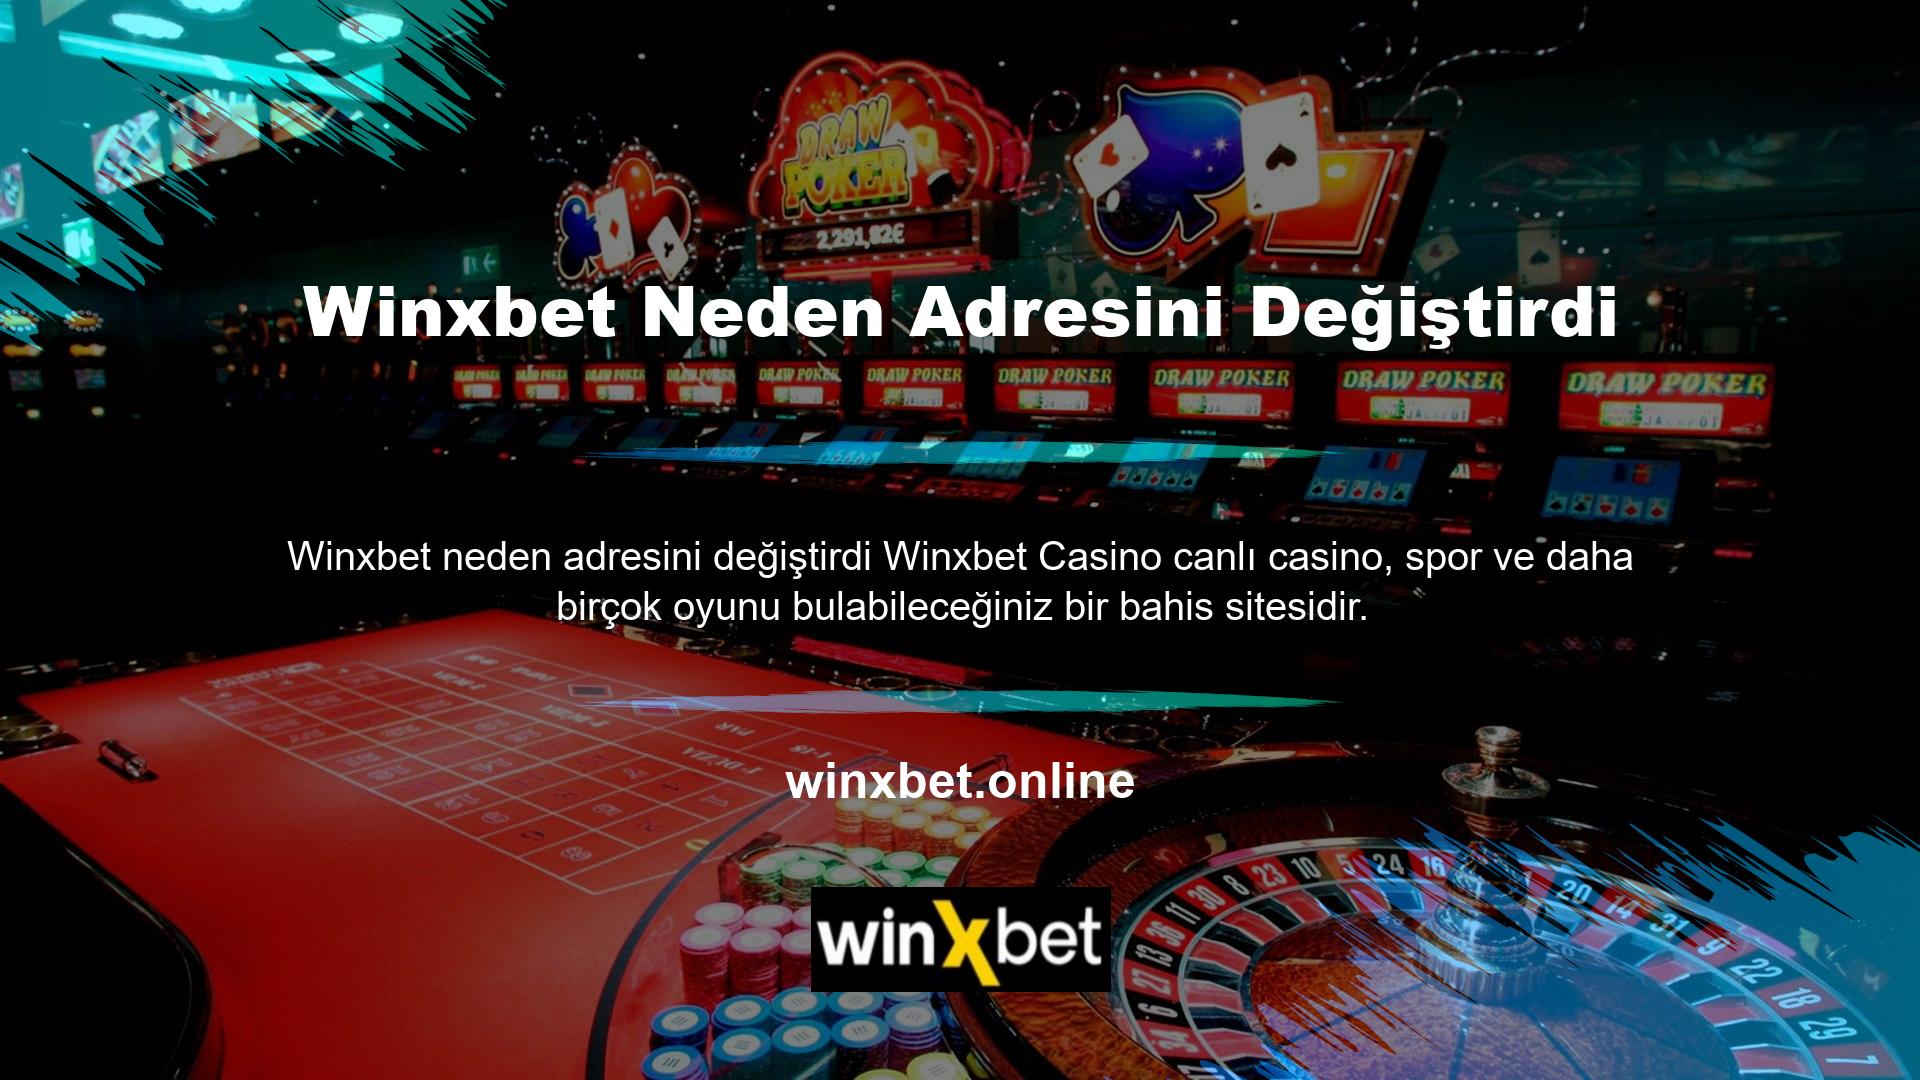 Site casino bölümünü tercih edenler için en ünlü oyunları sunuyor ancak sistem spor bölümünde çeşitli kuponlar oluşturmakta ısrar ediyor